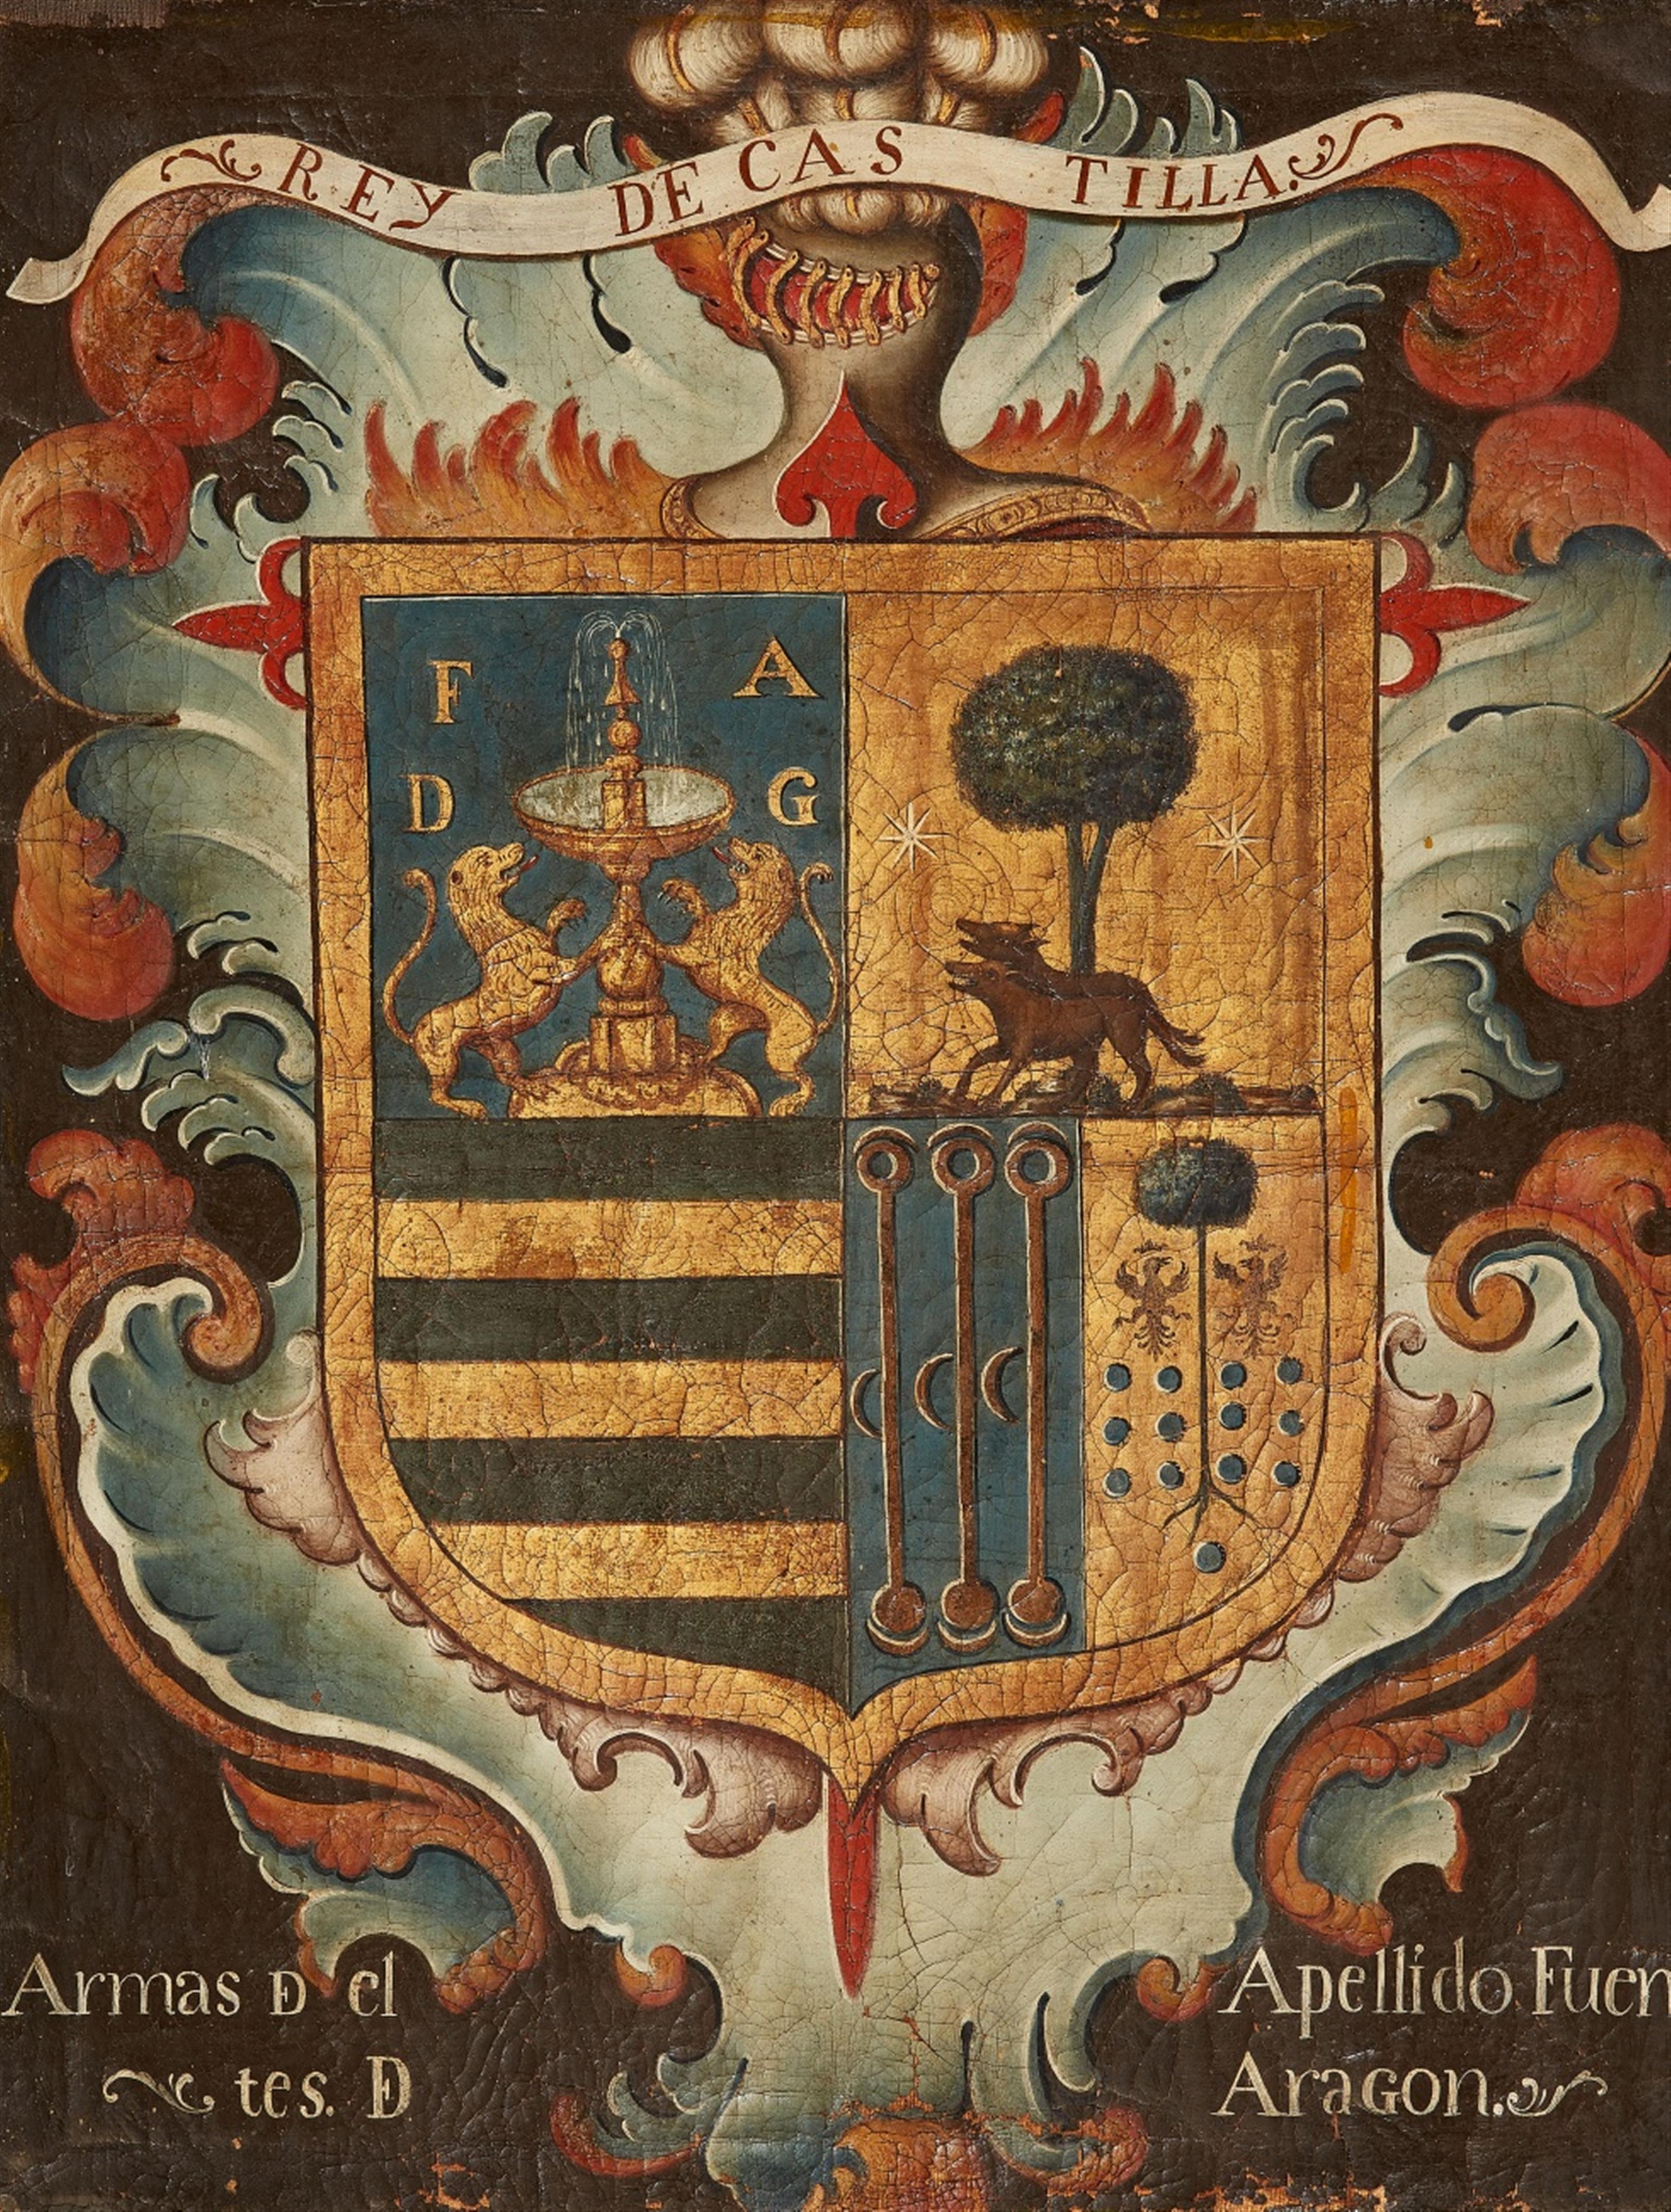 Spanischer Meister des 18. Jahrhunderts - Wappenschild "Rey de Castilla / Armas D cl Apellido Fuen / tes D Aragon" - image-1